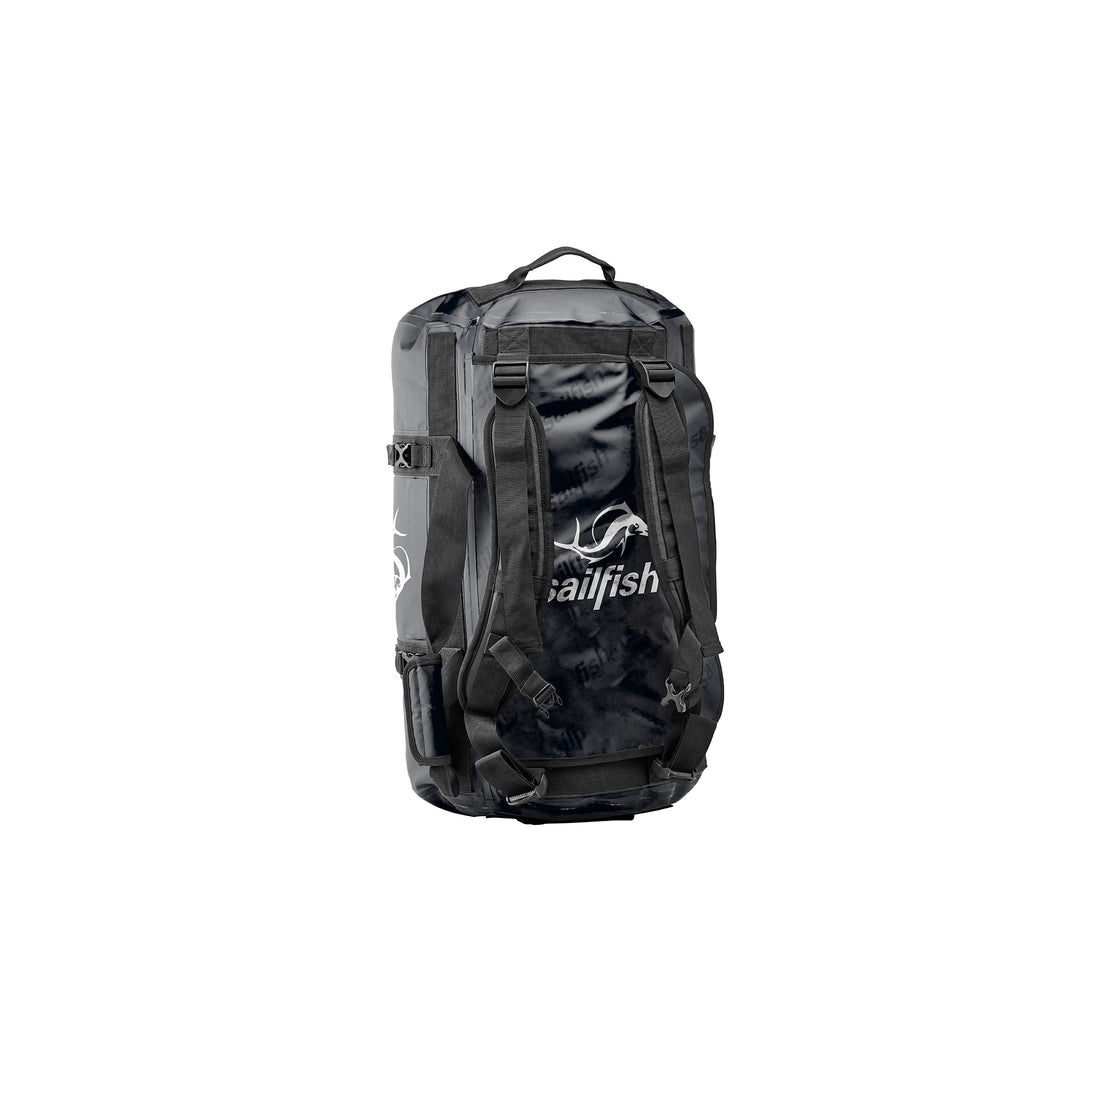 Triathlon backpack sailfish ✓ - sailfish GmbH